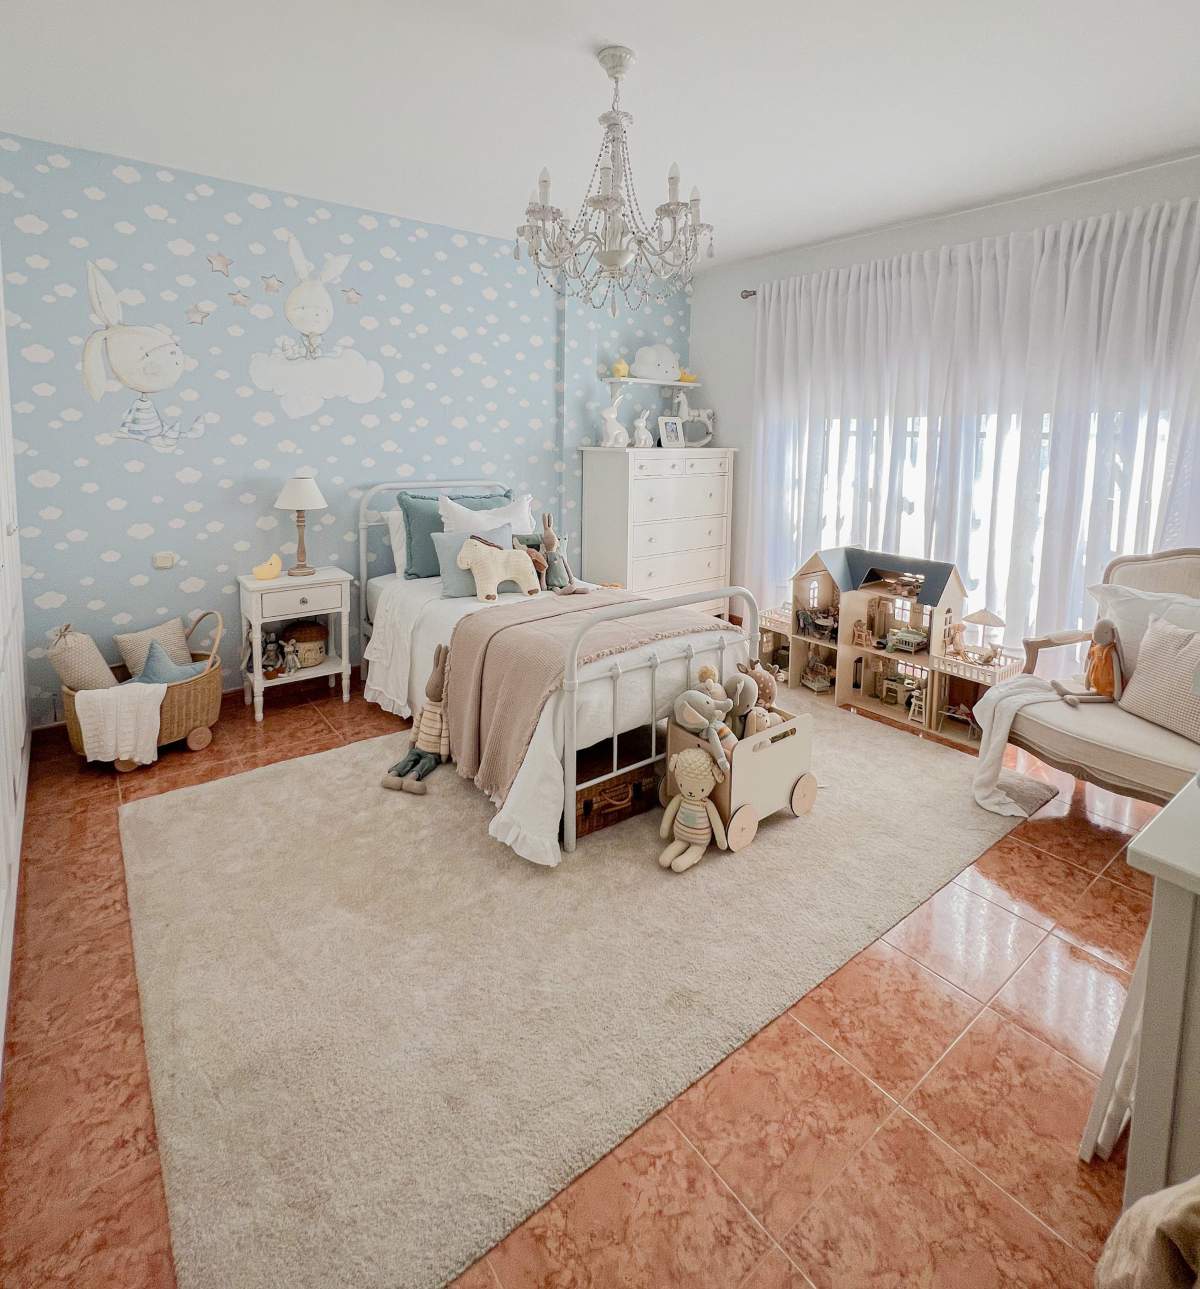 Dormitorio infantil en tonos blancos y azules.